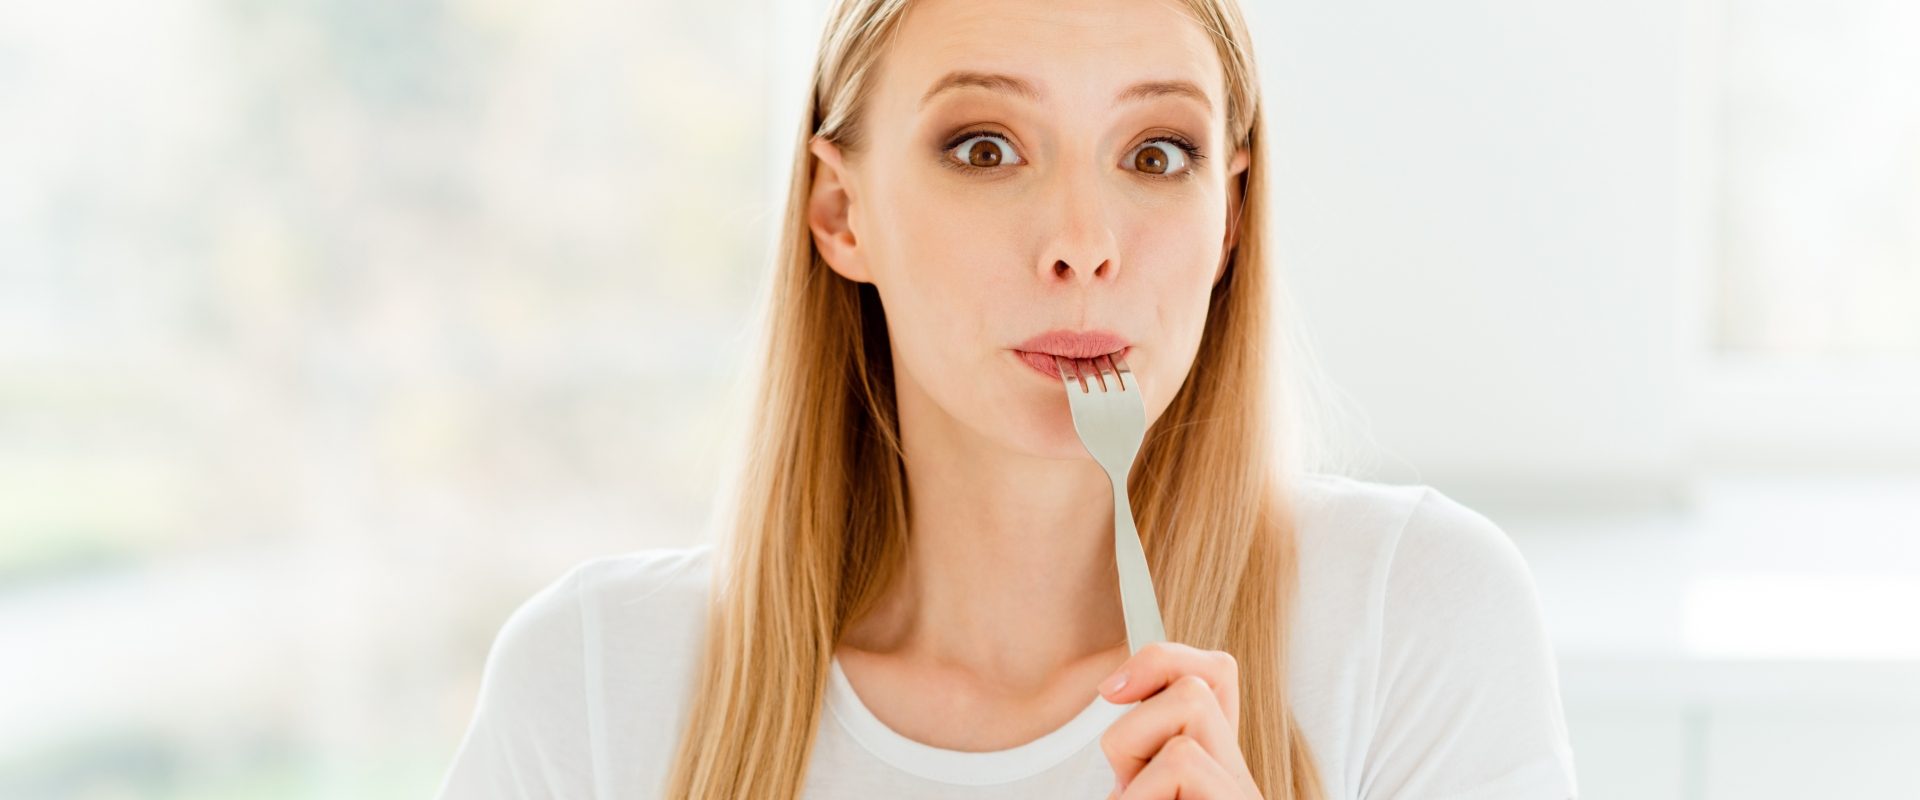 Niesmak w ustach - co może oznaczać metaliczny posmak w ustach? Młoda kobieta oblizuje widelec.